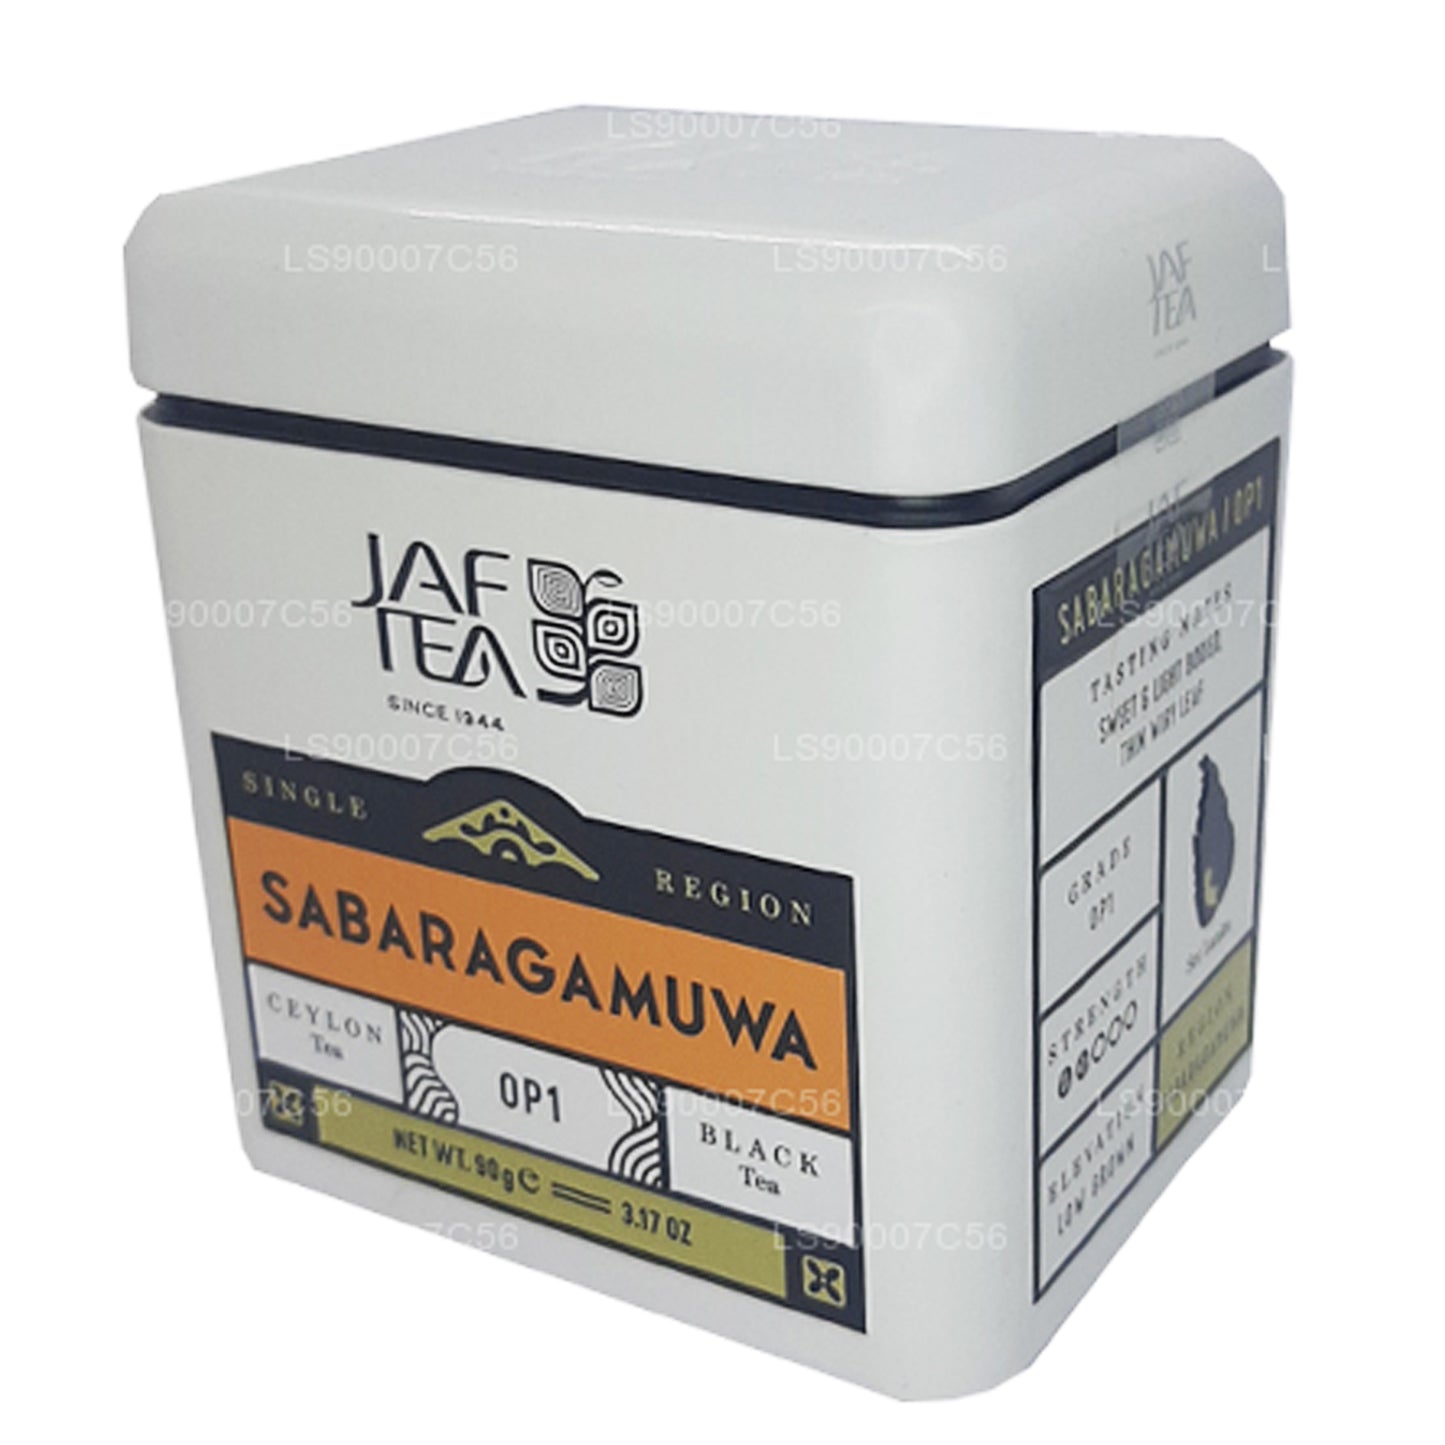 Lata de té Jaf de una sola región Sabaragamuwa OP1 (90 g)